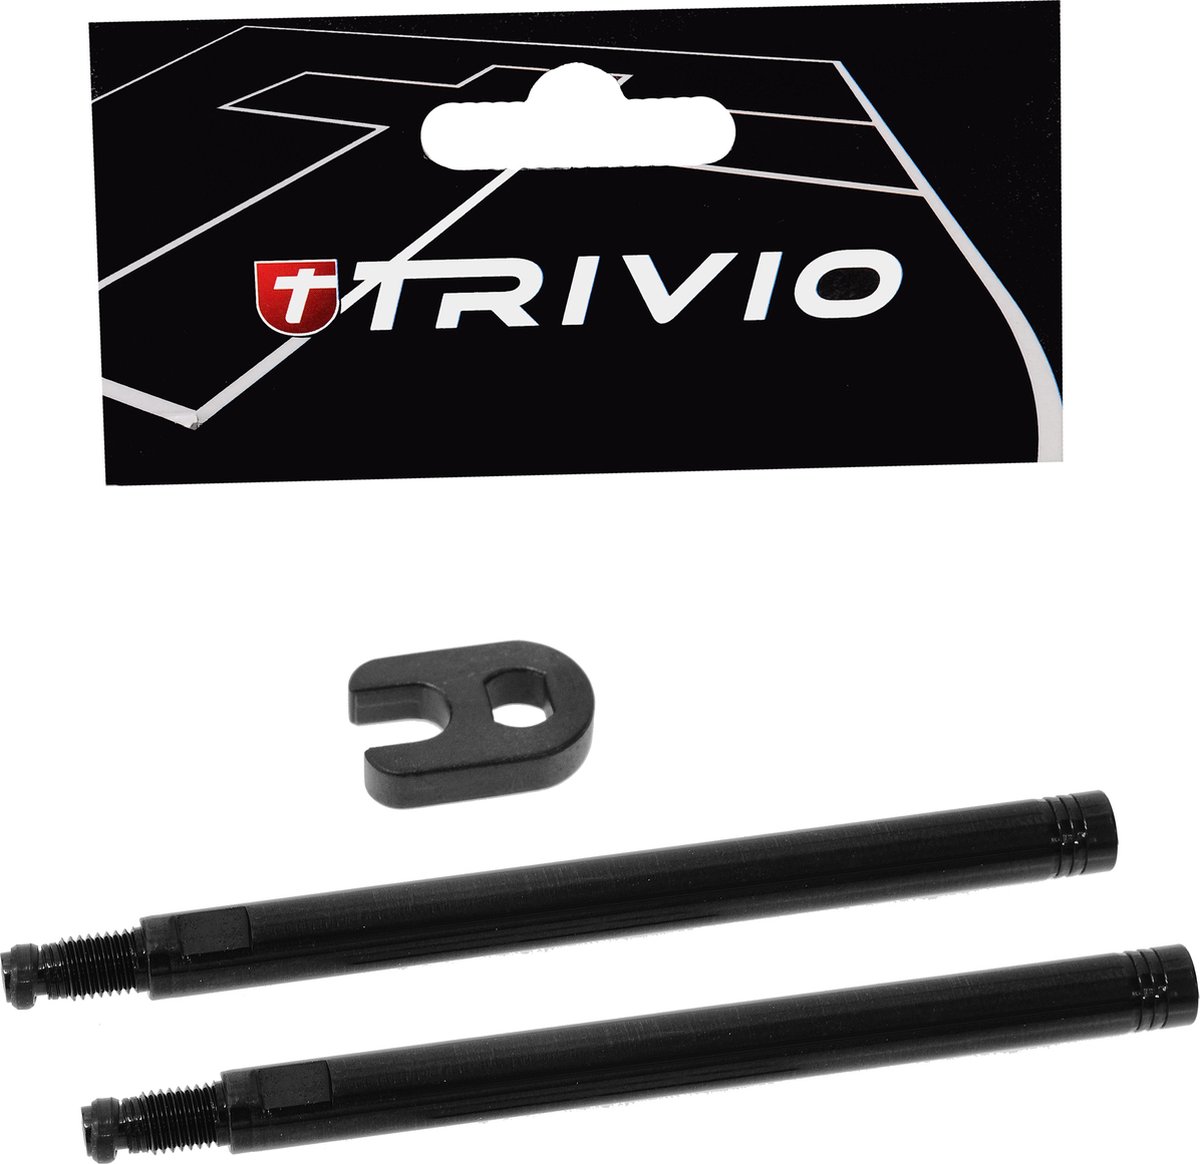 Trivio - Ventielverlenger Set Zwart 70MM Inclusief Gereedschap